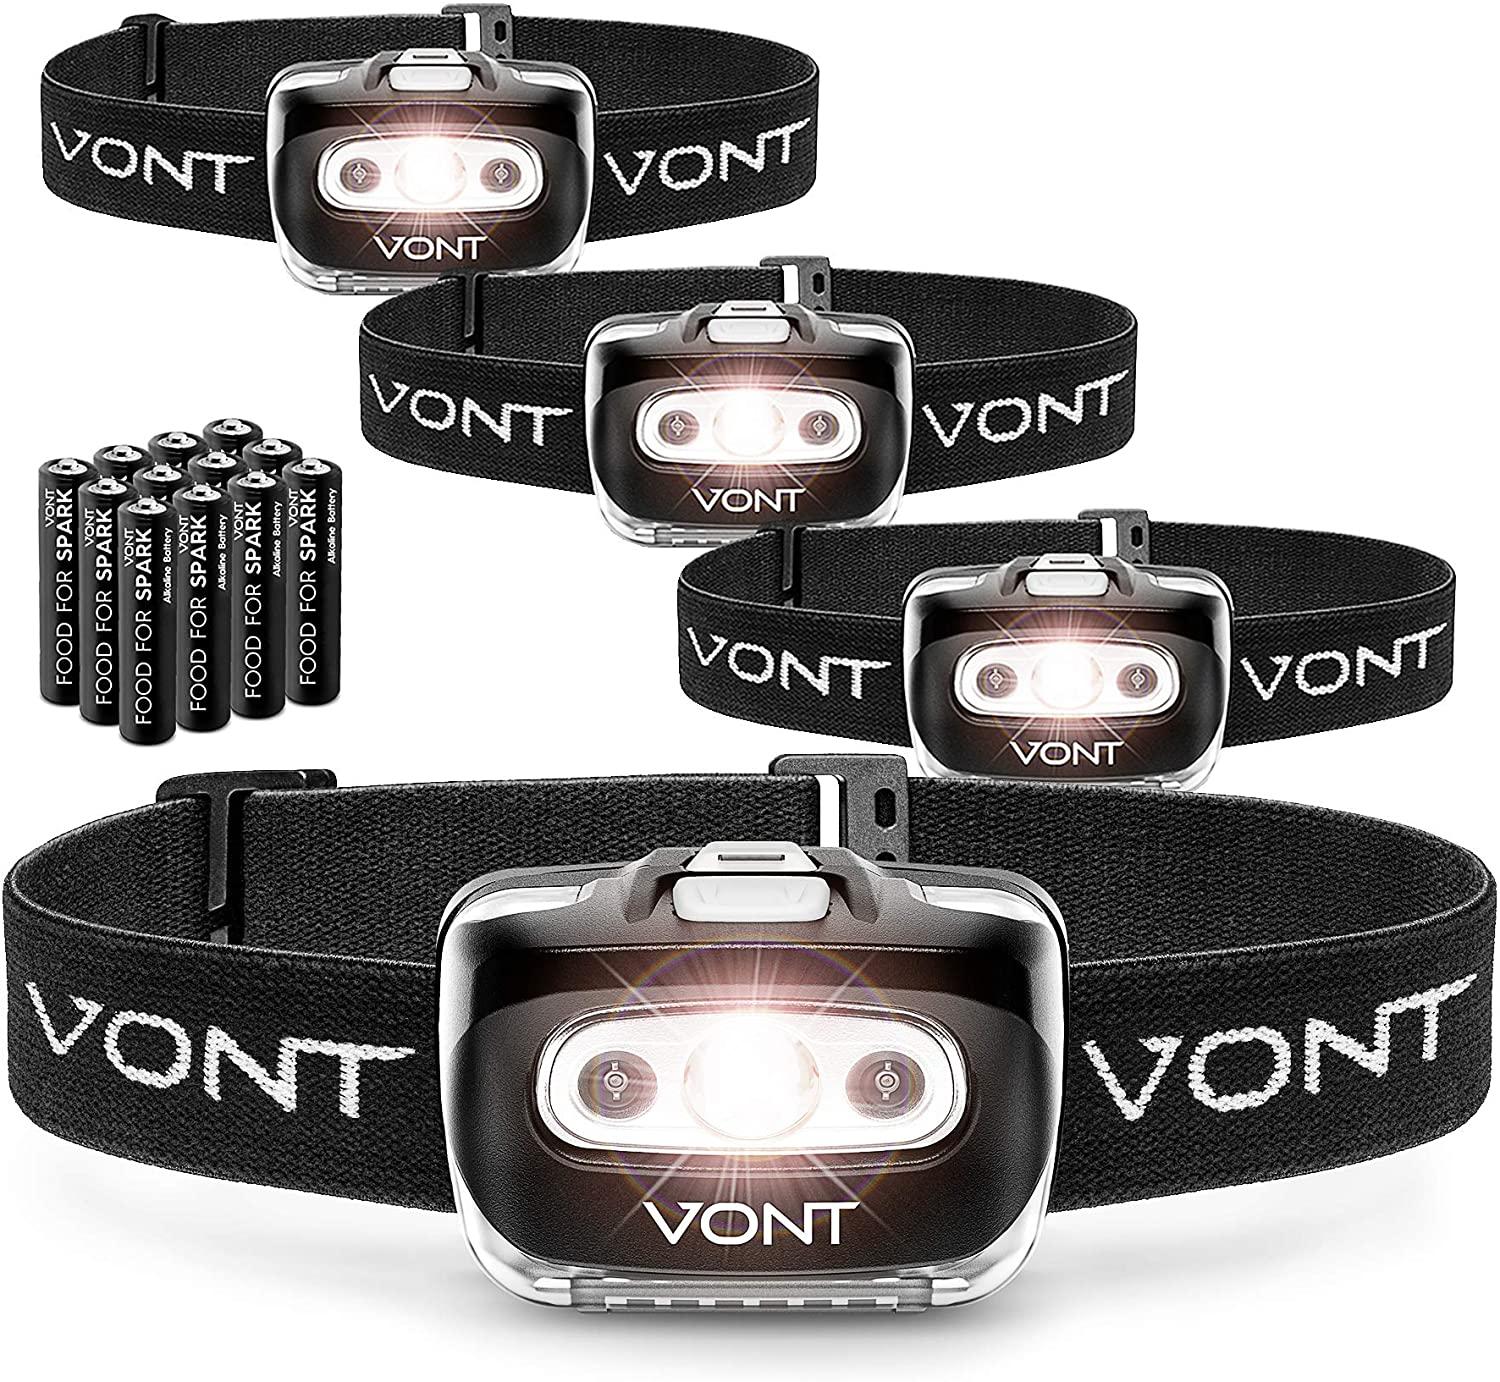 4 Vont Spark LED Headlamp Flashlight for $19.99